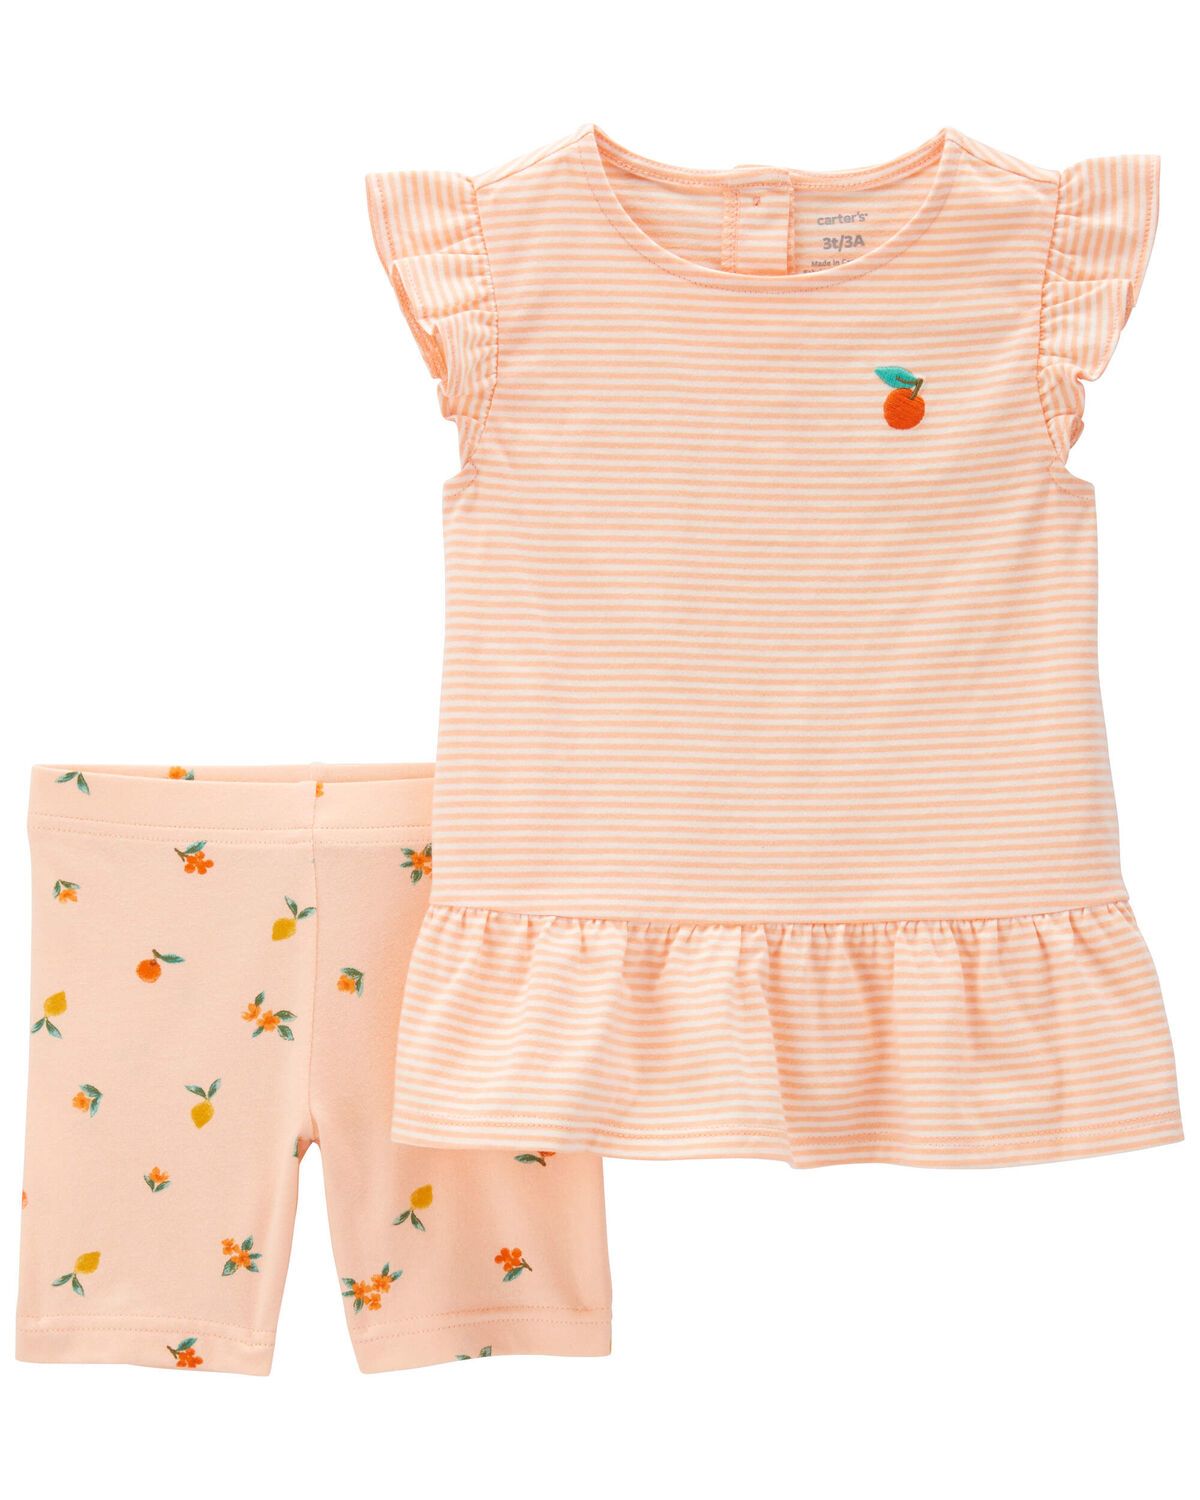 Toddler 2-Piece Peach Top & Bike Short Set | Carter's